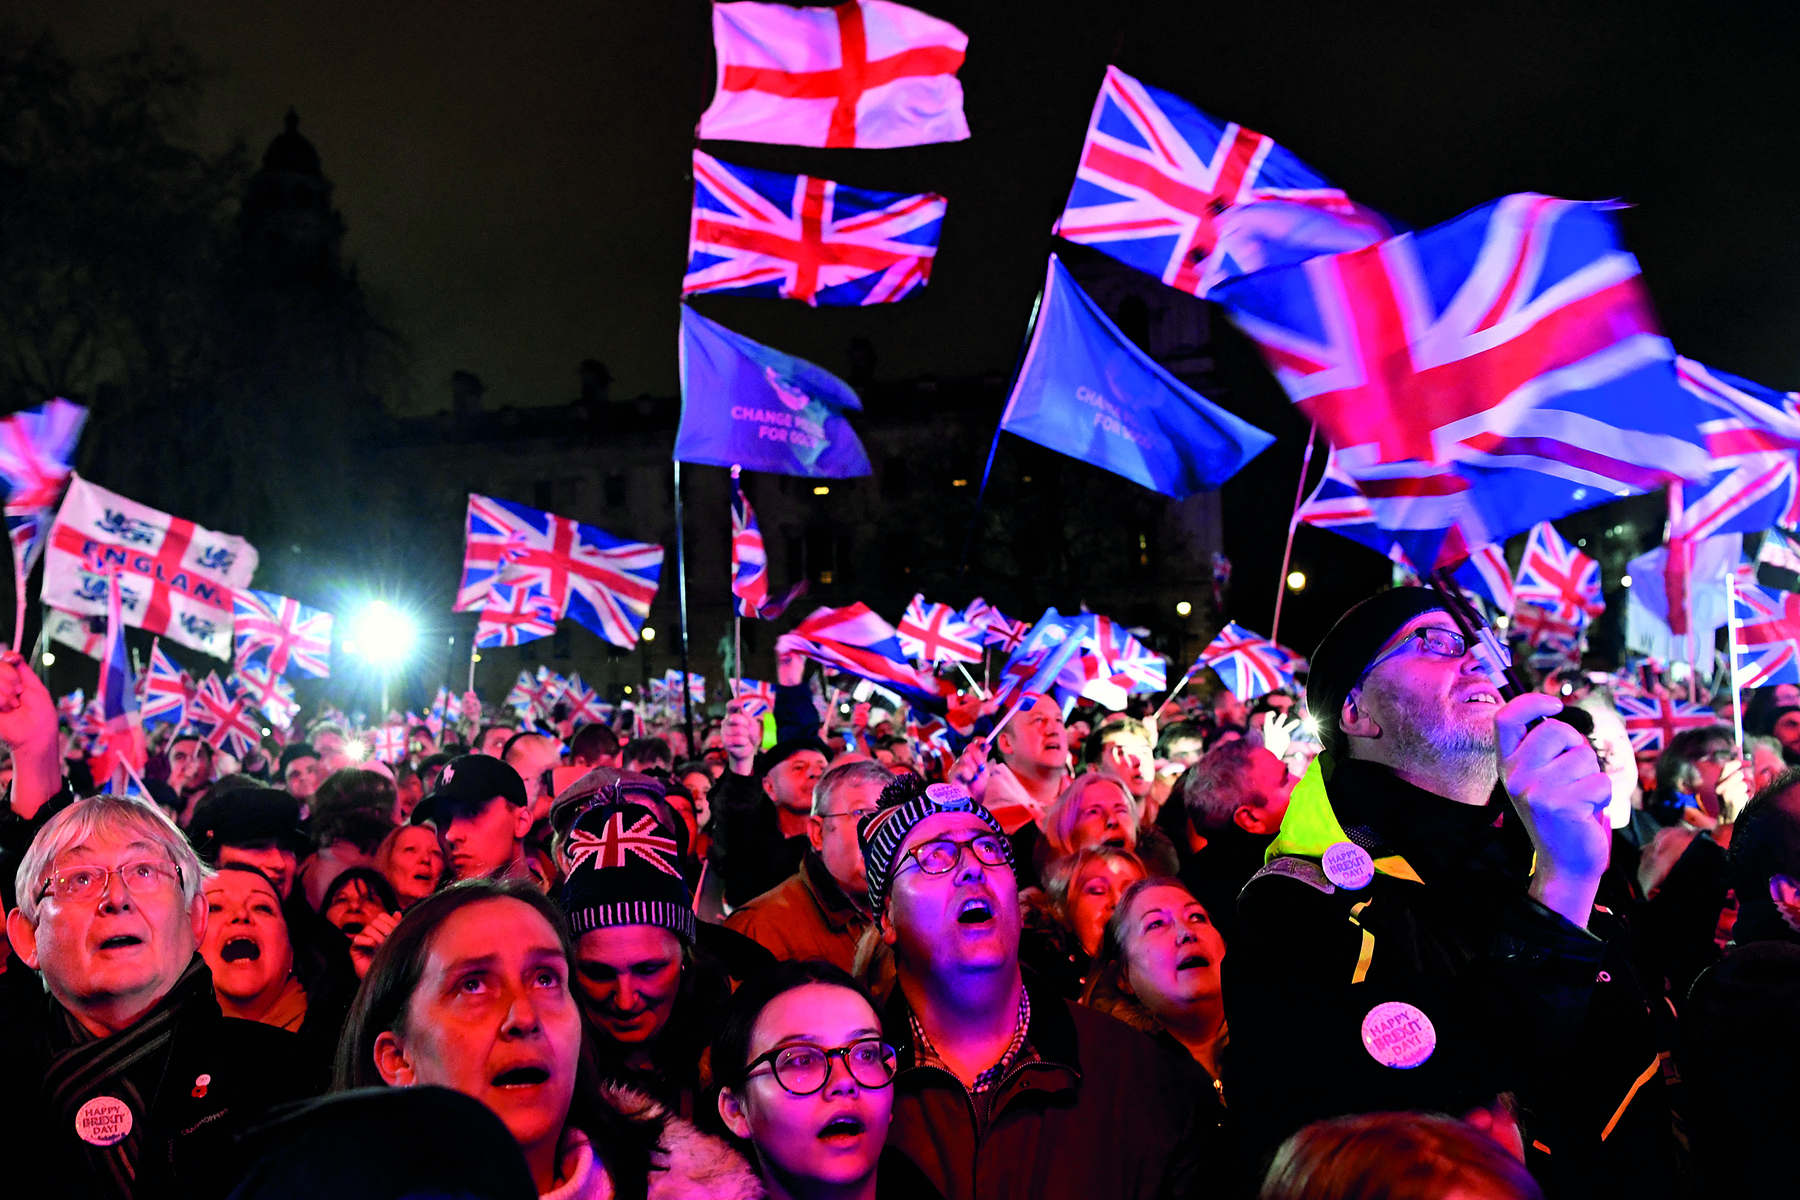 Fotografia. Uma multidão de pessoas reunidas em um espaço público aberto, durante a noite, vestindo agasalhos e gorros. Elas parecem estar cantando e algumas seguram a bandeira do Reino Unido e da Inglaterra.